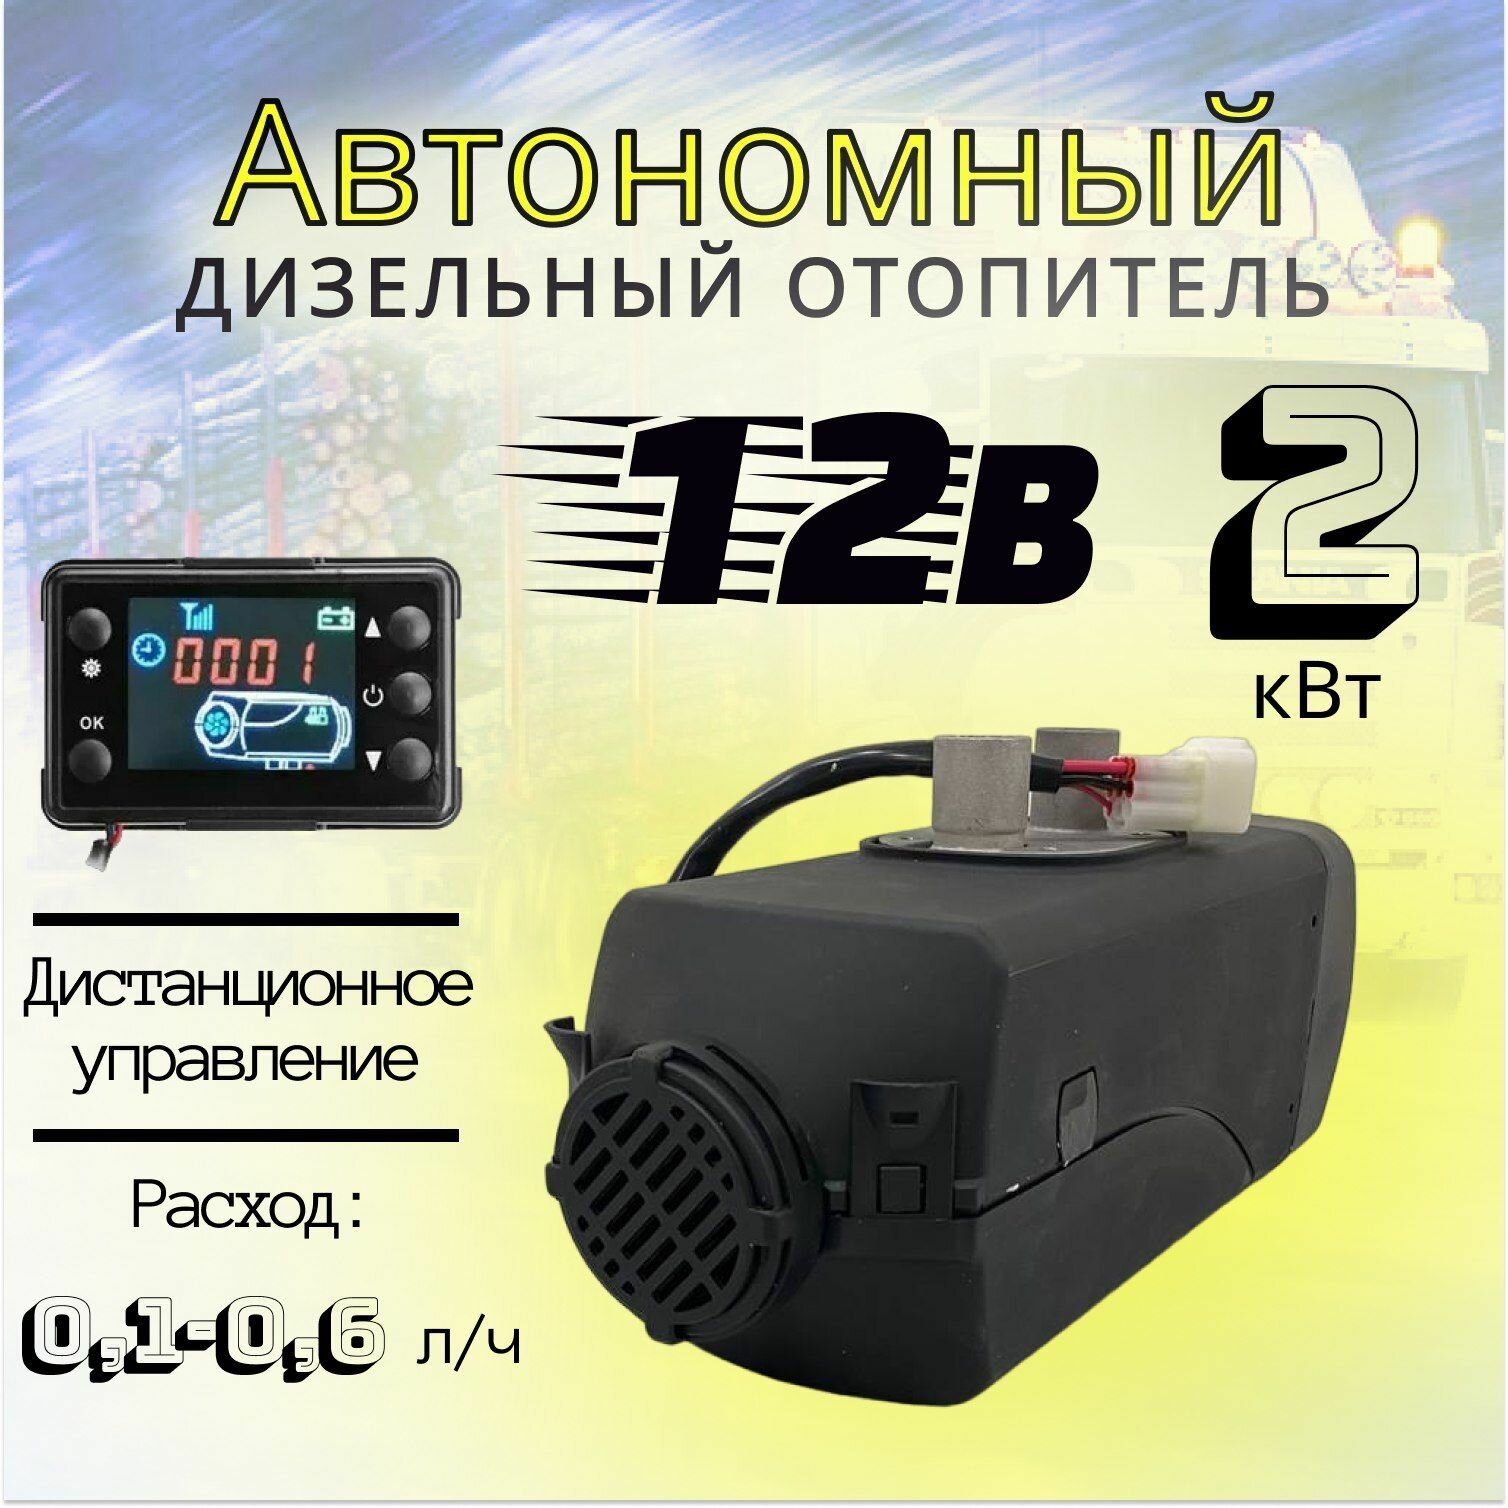 Автономный отопитель дизельный 12В 2кВт Синьтэнди автономка / сухой фен / воздушный обогреватель